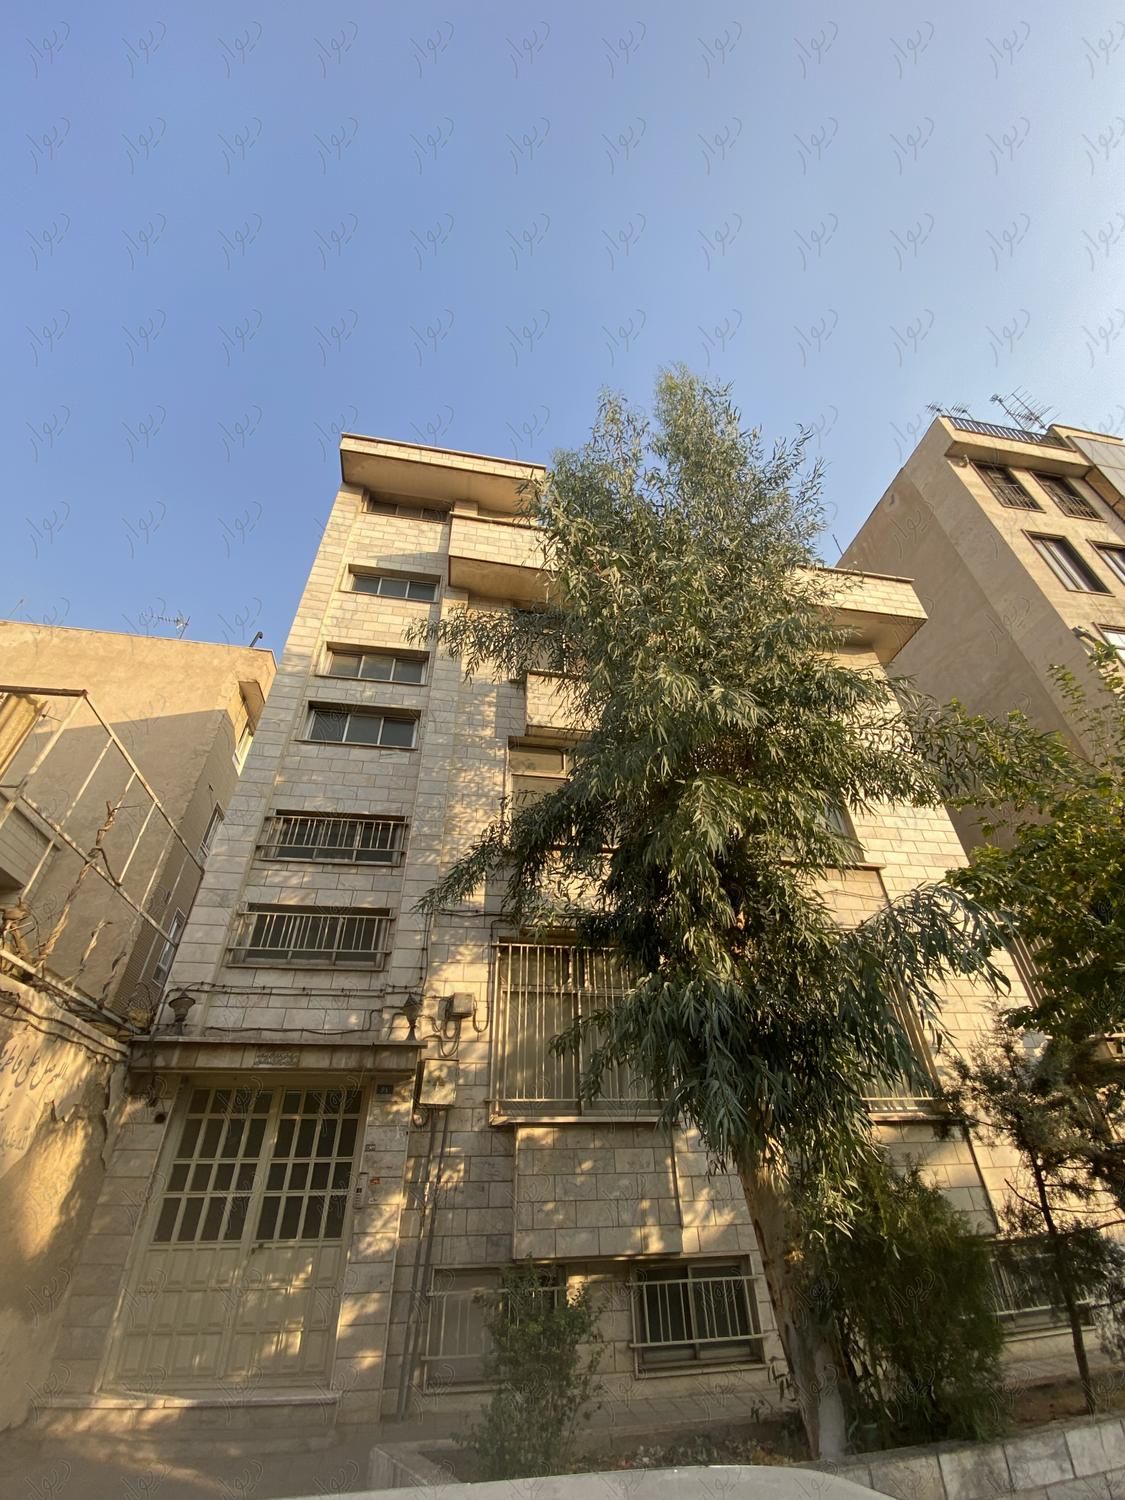 آپارتمان 4 طبقه متراژ کل ۱۵۲ متر هر واحد ۱۱۰ متر|فروش آپارتمان|تهران, قیام|دیوار